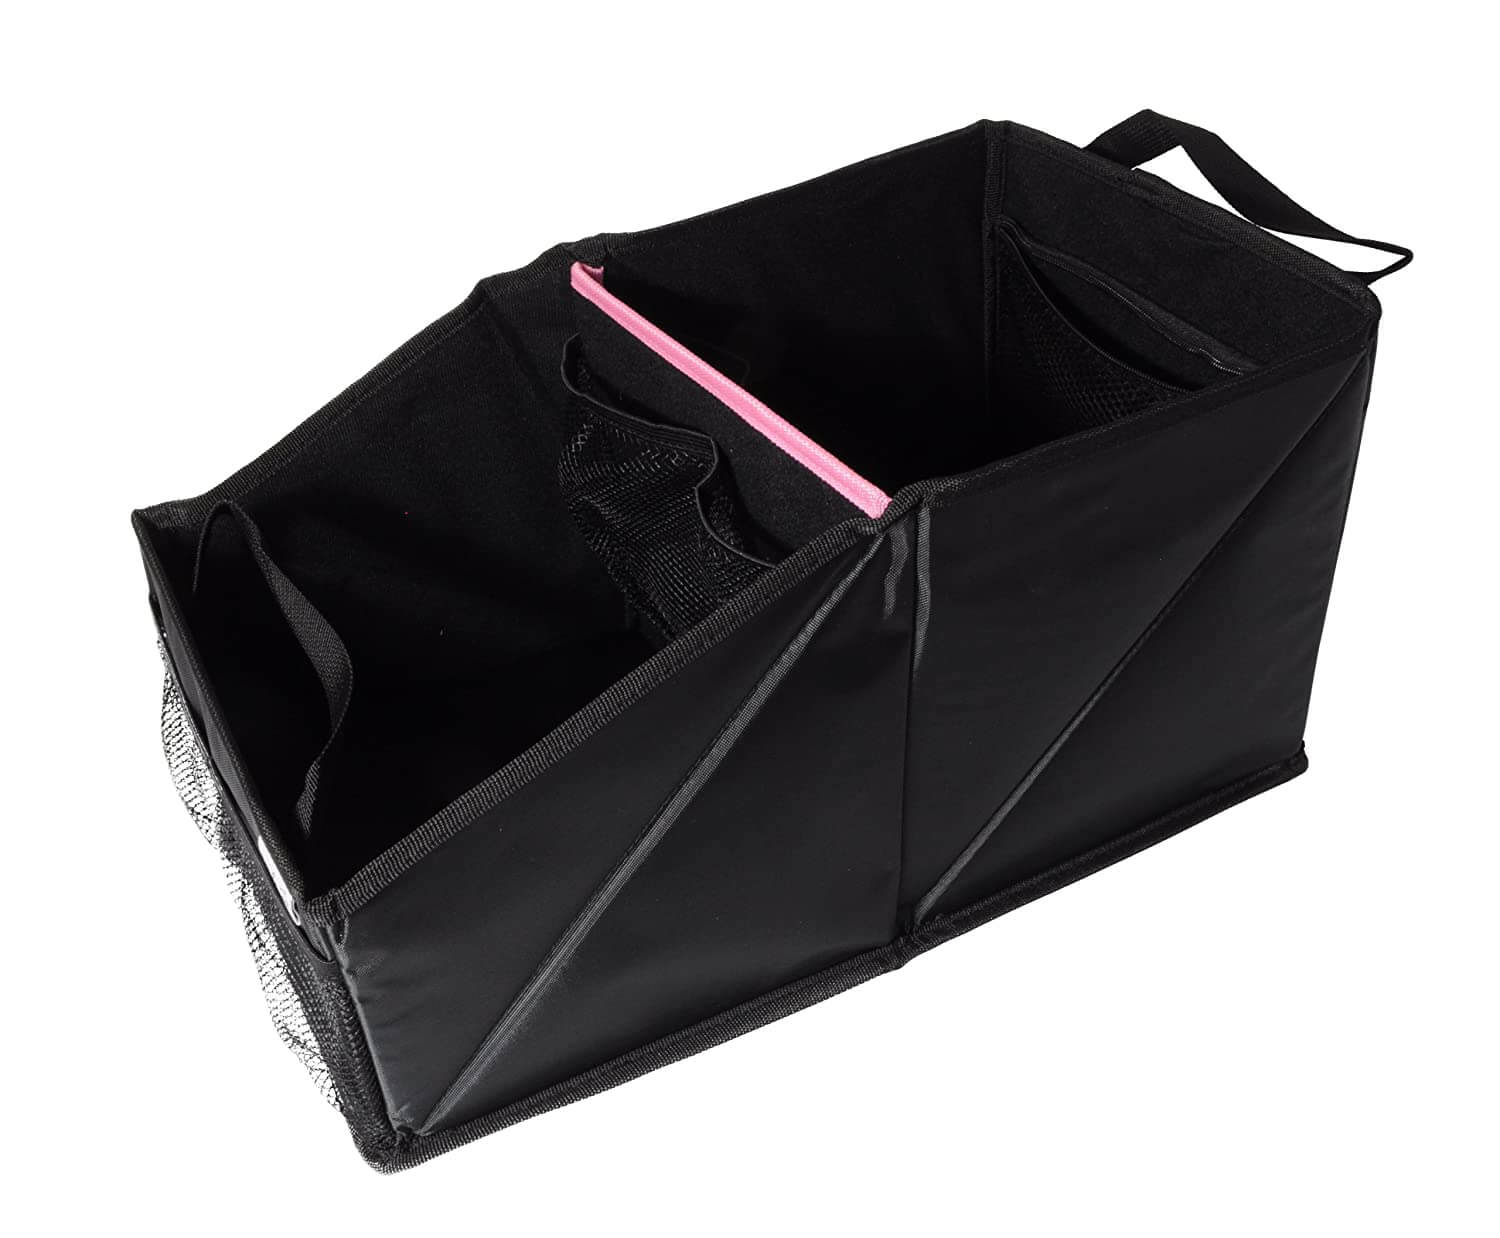 https://www.norma24.de/media/image/63/54/c9/1135136-01-Wumbi-Aufbewahrungsbox-pink-Kinder-Einkauf-Wumbi-Aufbewahrungsbox-Pink-KfZ-Kofferraum-Kofferraumtasche-Organizer-Auto-Tasche.jpg